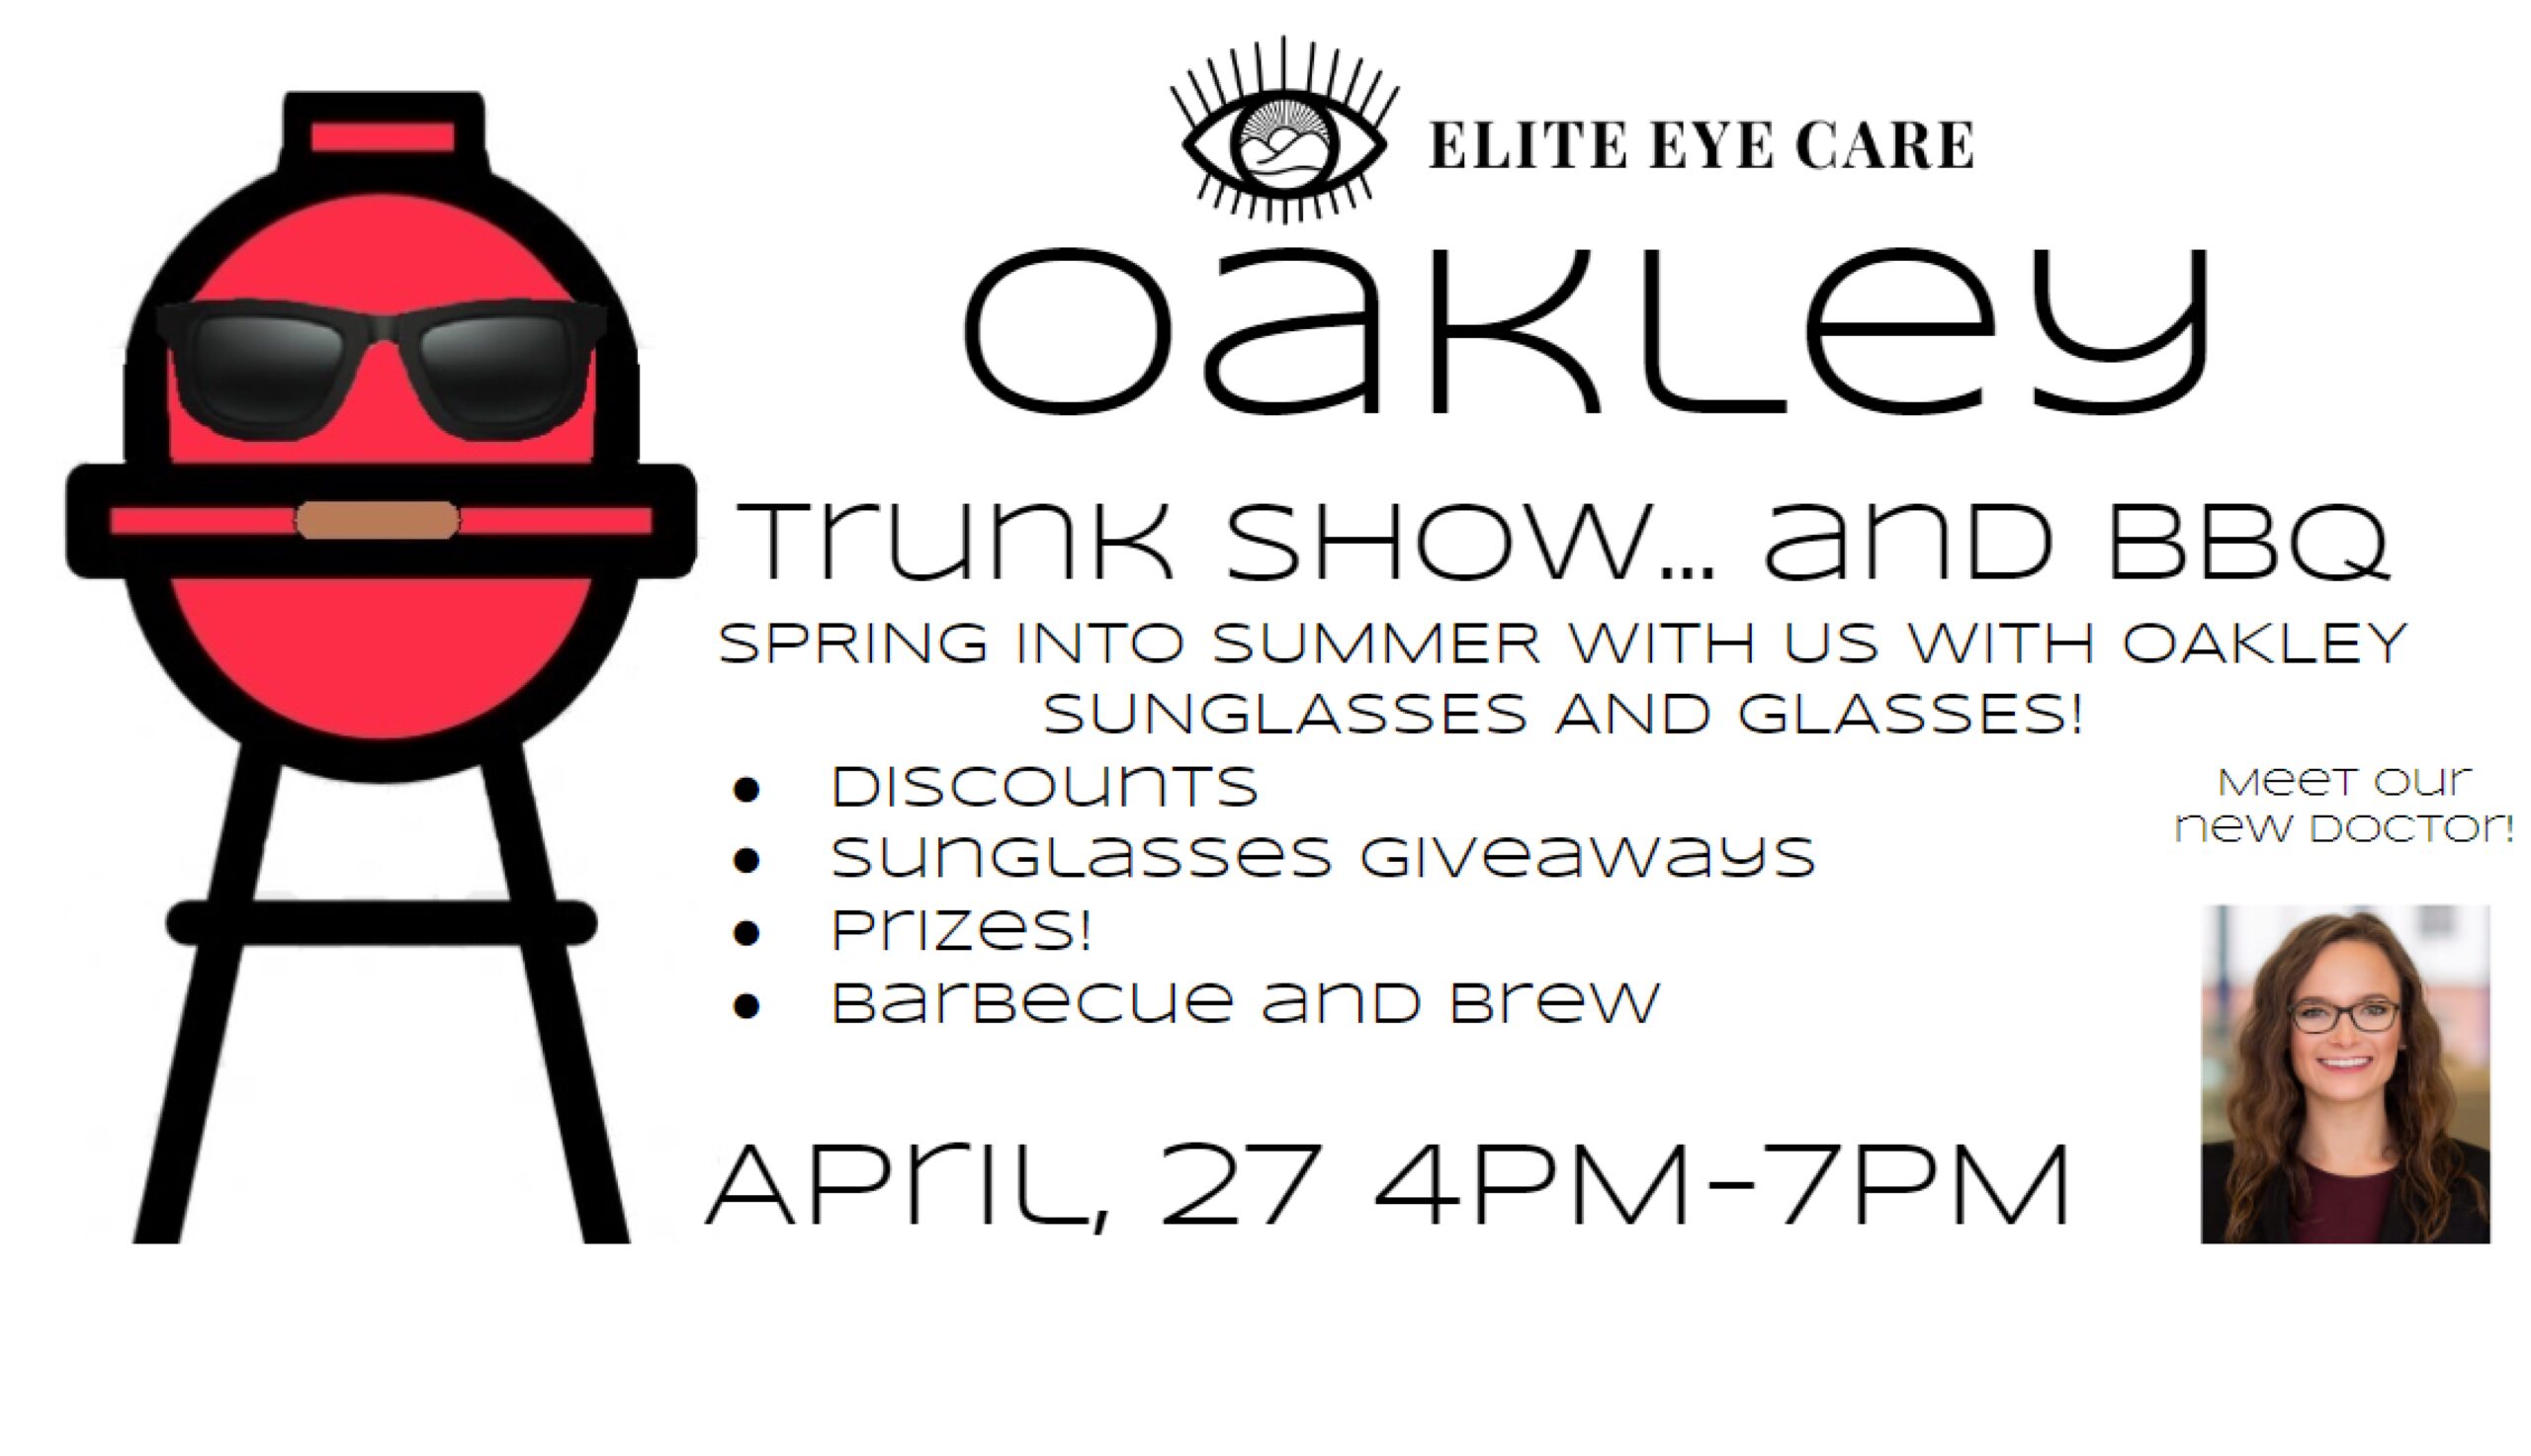 Oakley flyer for Elite Eye Care in Arden trunk show. Featuring 50% off Oakleys